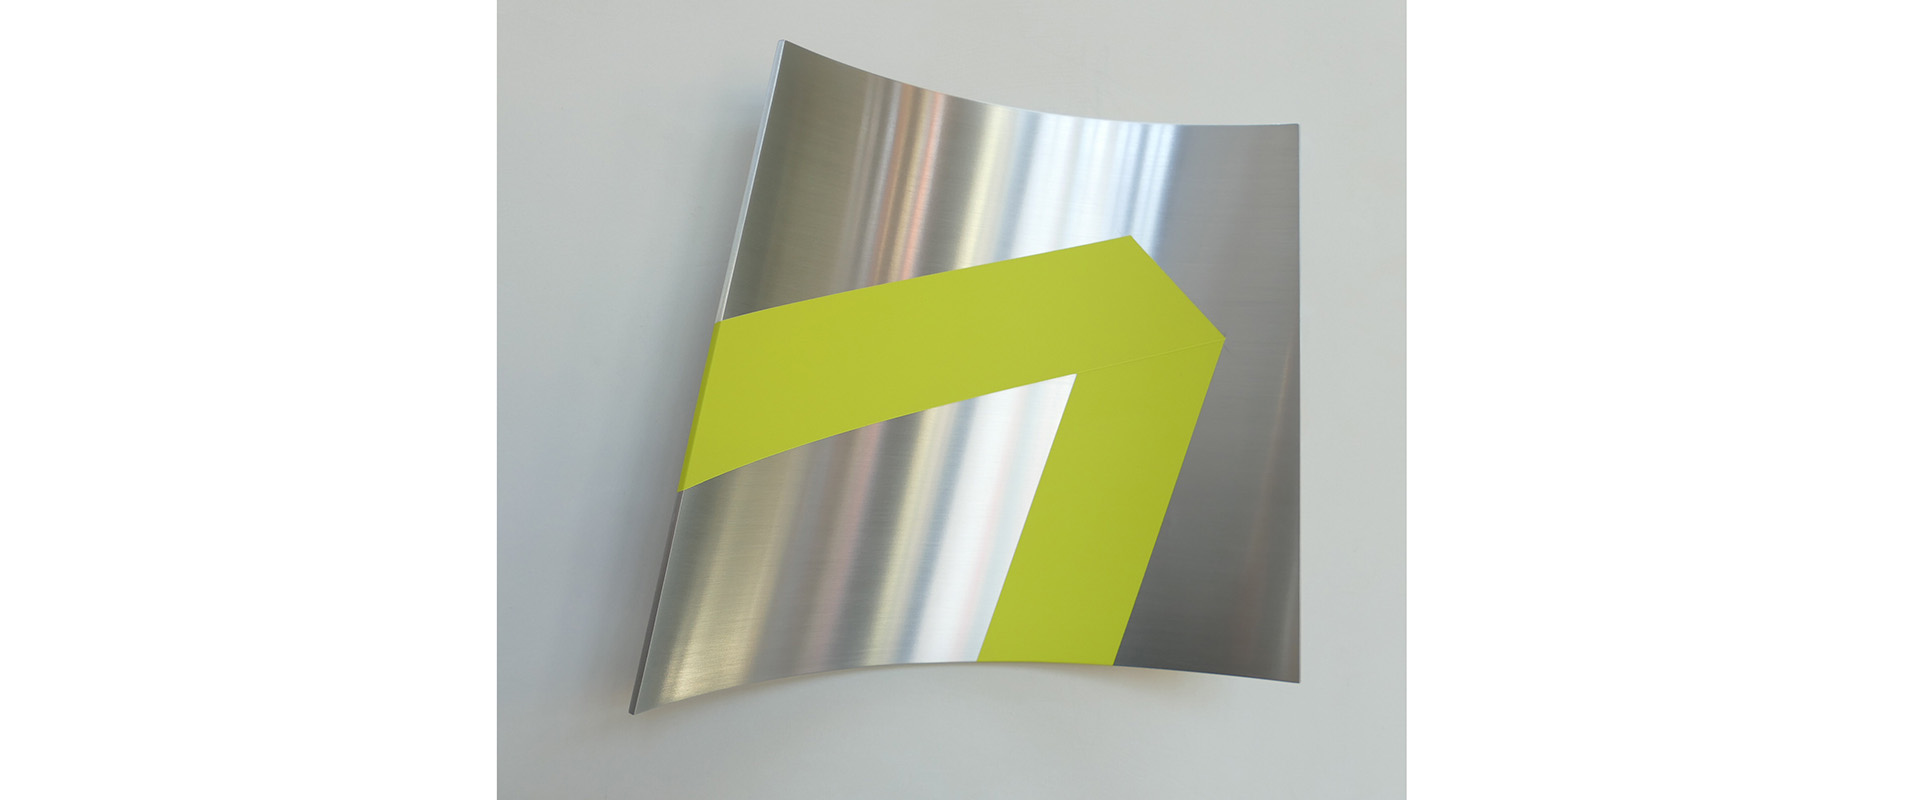 Raumzeichen - 2020, Lack auf Aluminium, 28 x 29 x 7 cm